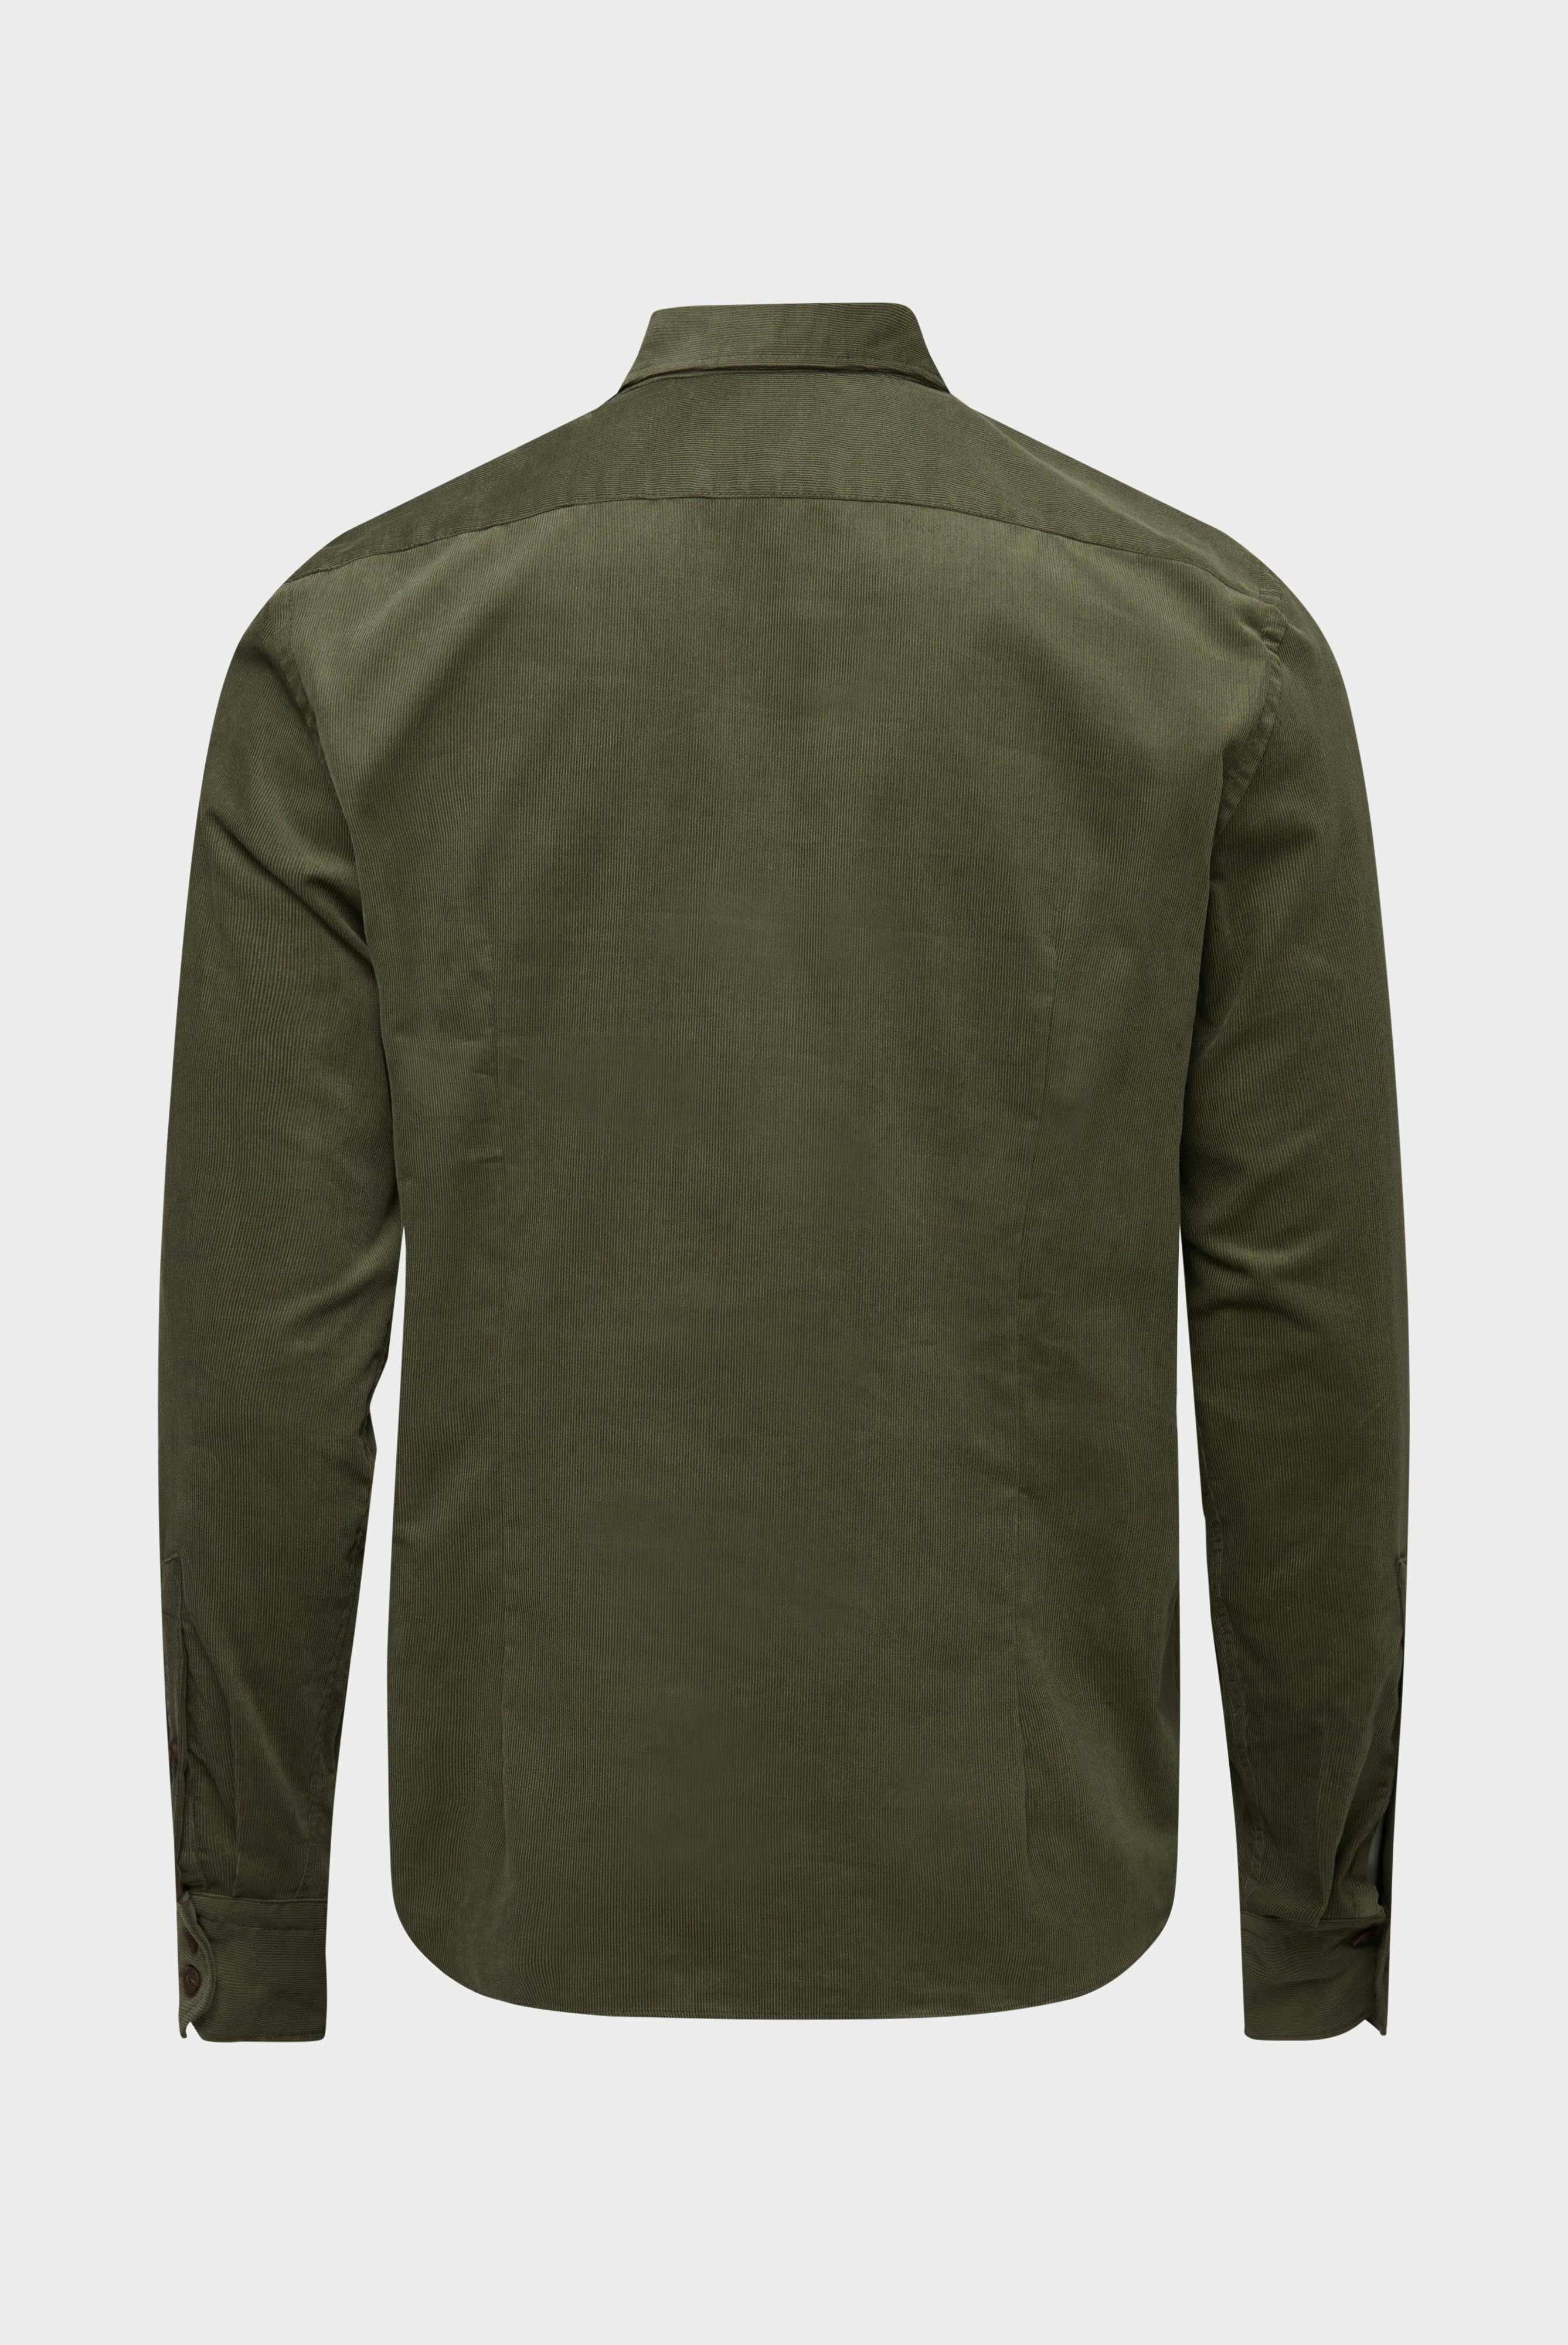 Casual Shirts+Corduroy Shirt Slim Fit+20.2012.9V.150271.980.38